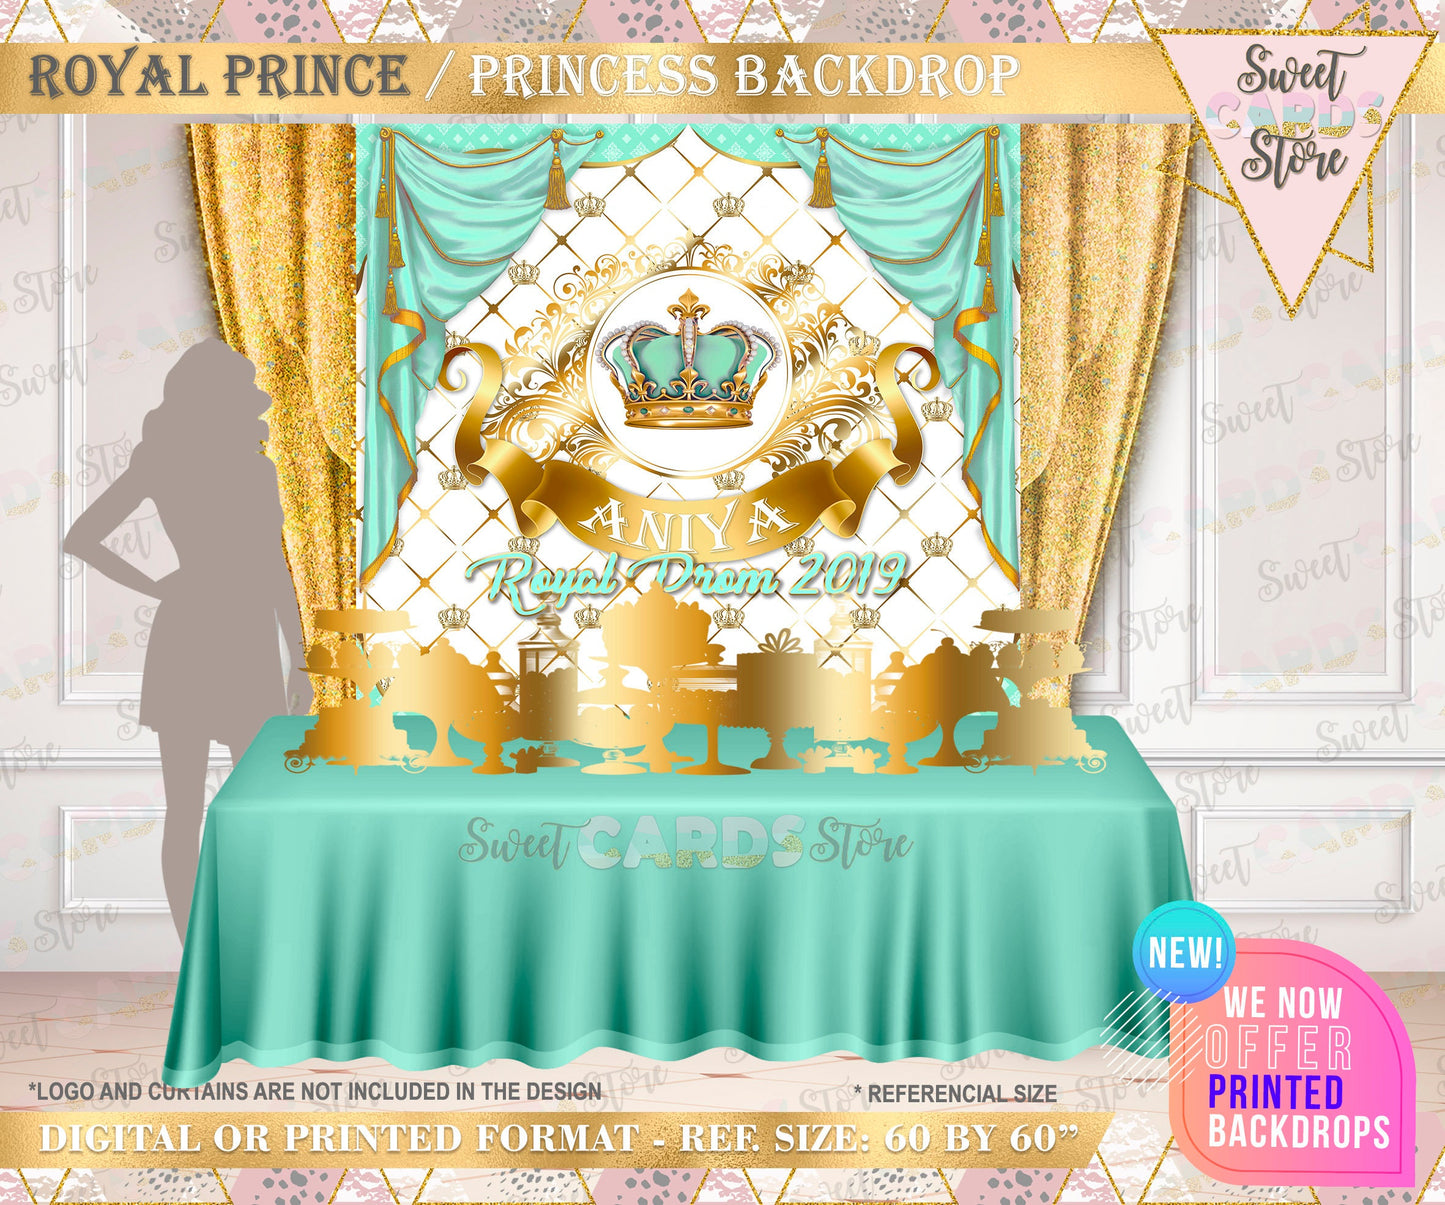 Royal Prince princess Backdrop, Royal prince backdrop, Little prince princess backdrop, Royal Prince princess Banner, Royal Prince Prom